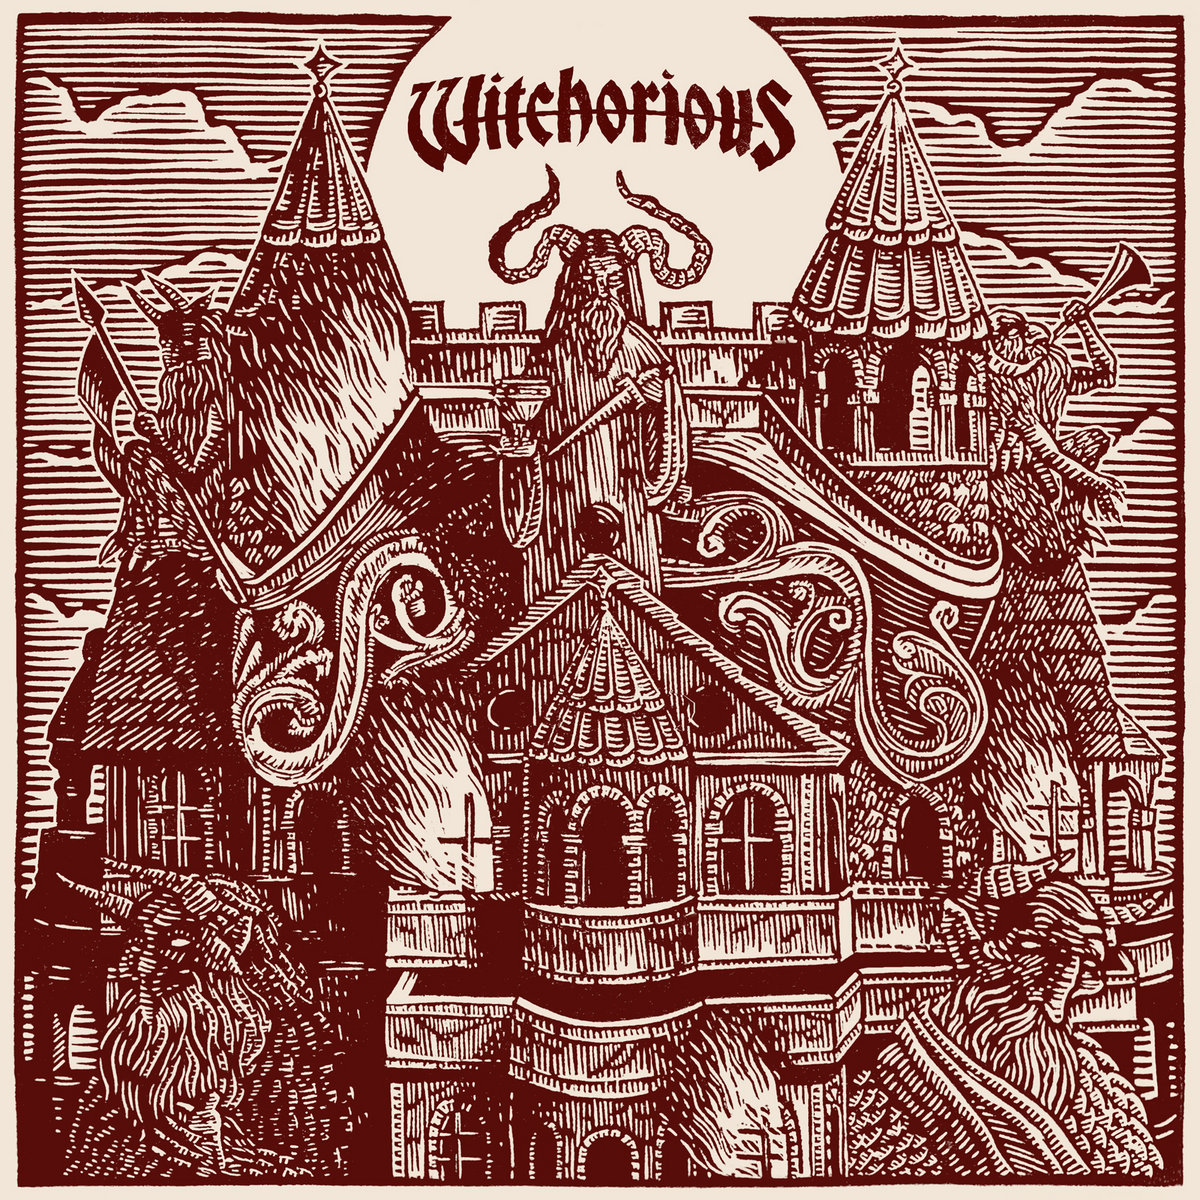 #WFENECMAG / N°60 : #CHRONIQUE p.165 de “Witchorious“ de WITCHORIOUS -> w-fenec.org 

#Witchorious #rock #doom #metal #heavyrock #stoner